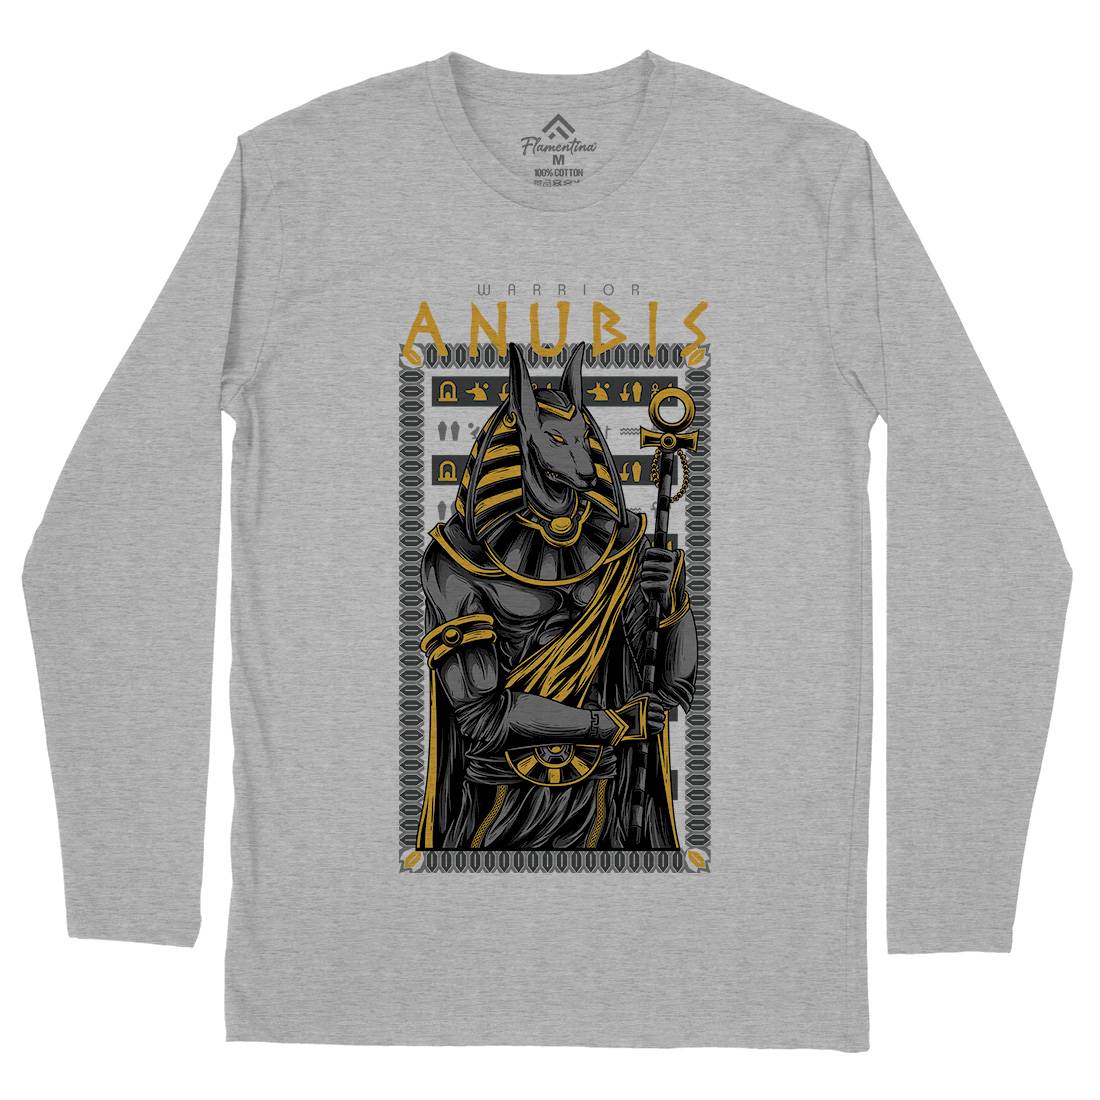 Anubis God Mens Long Sleeve T-Shirt Warriors D706